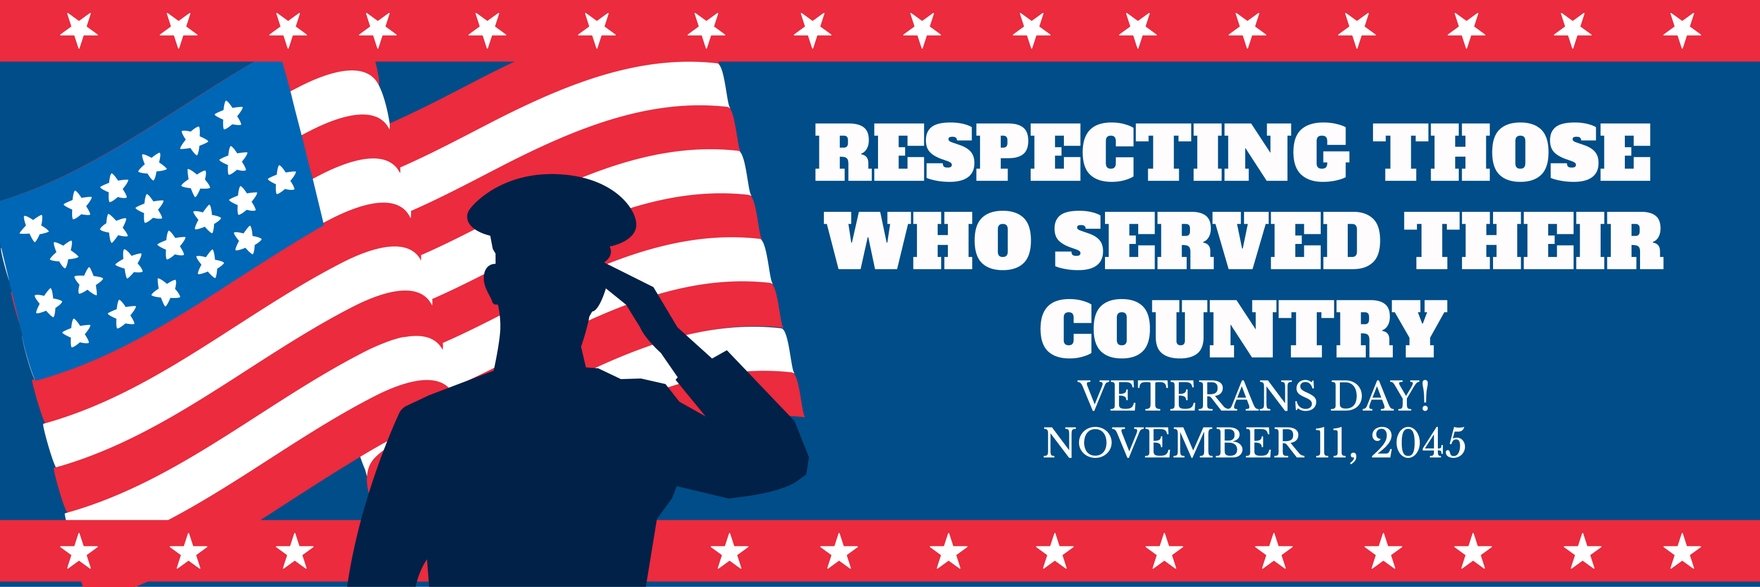 Veterans Day Twitter Banner